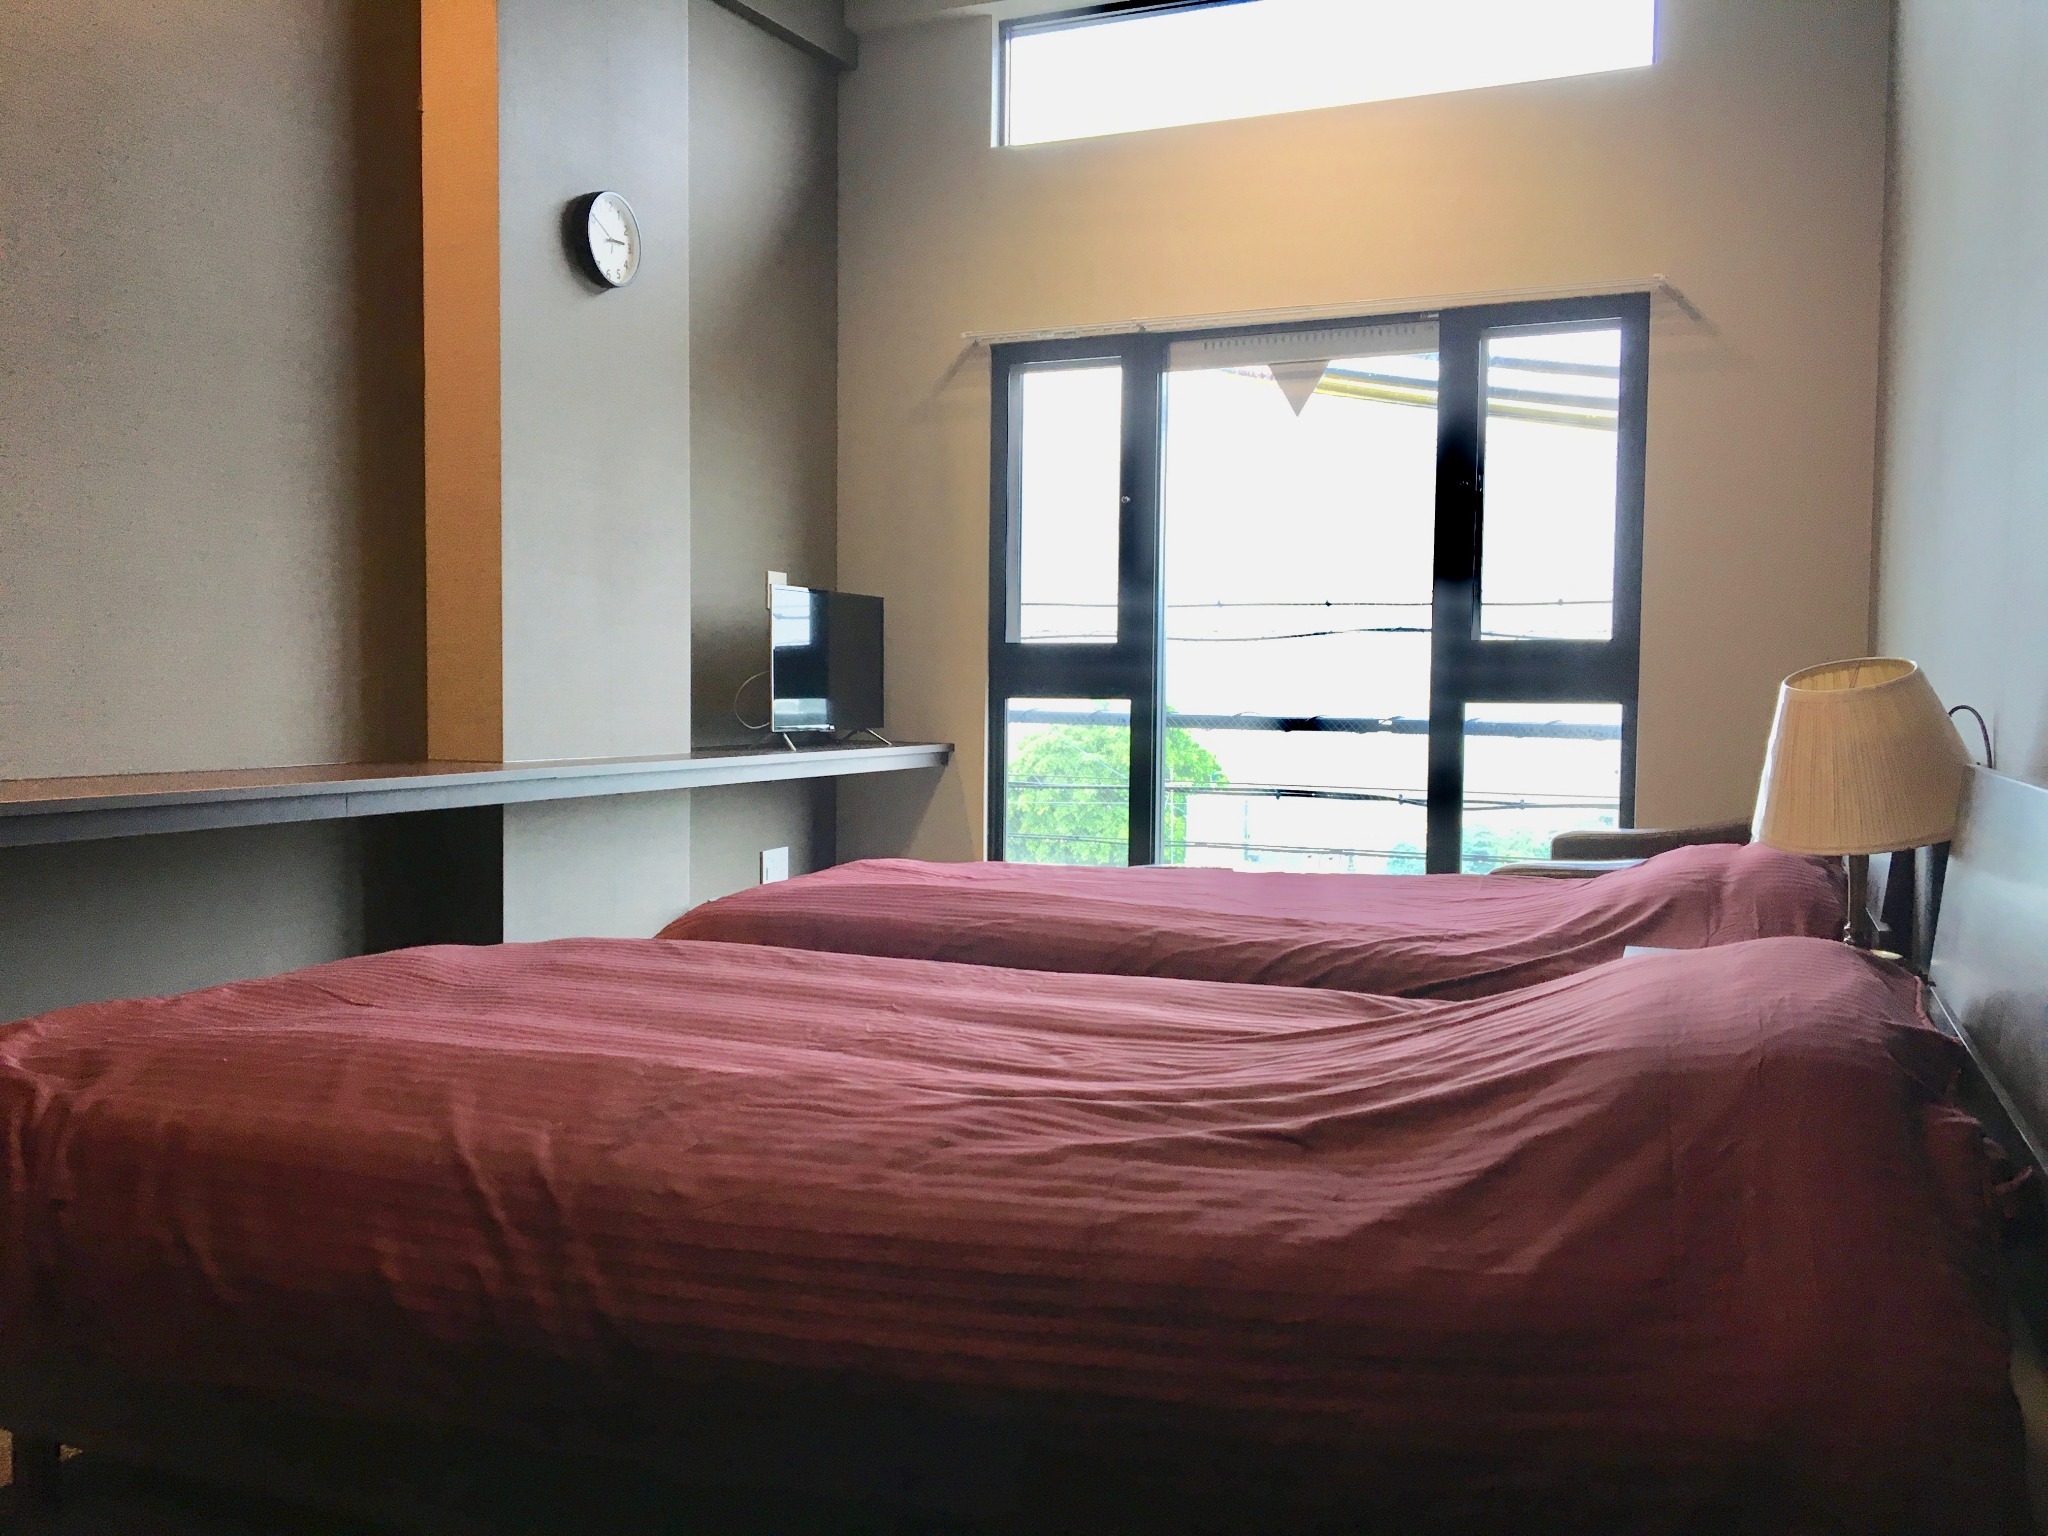 #202:ホテル仕様のお部屋でリラックスできる空間